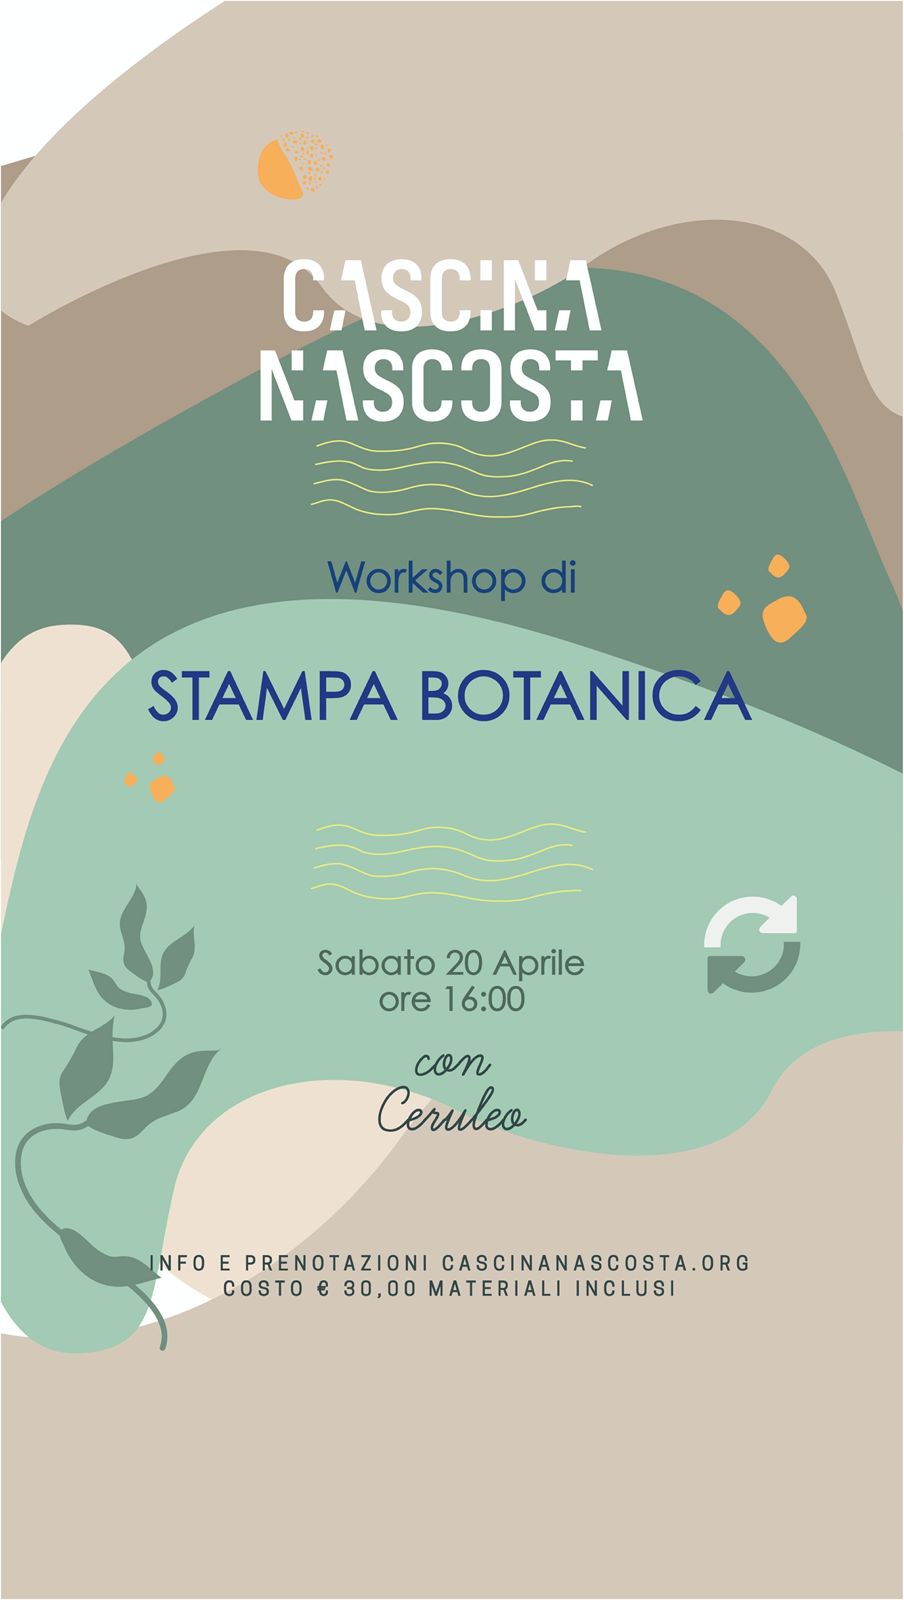 Workshop di stampa botanica